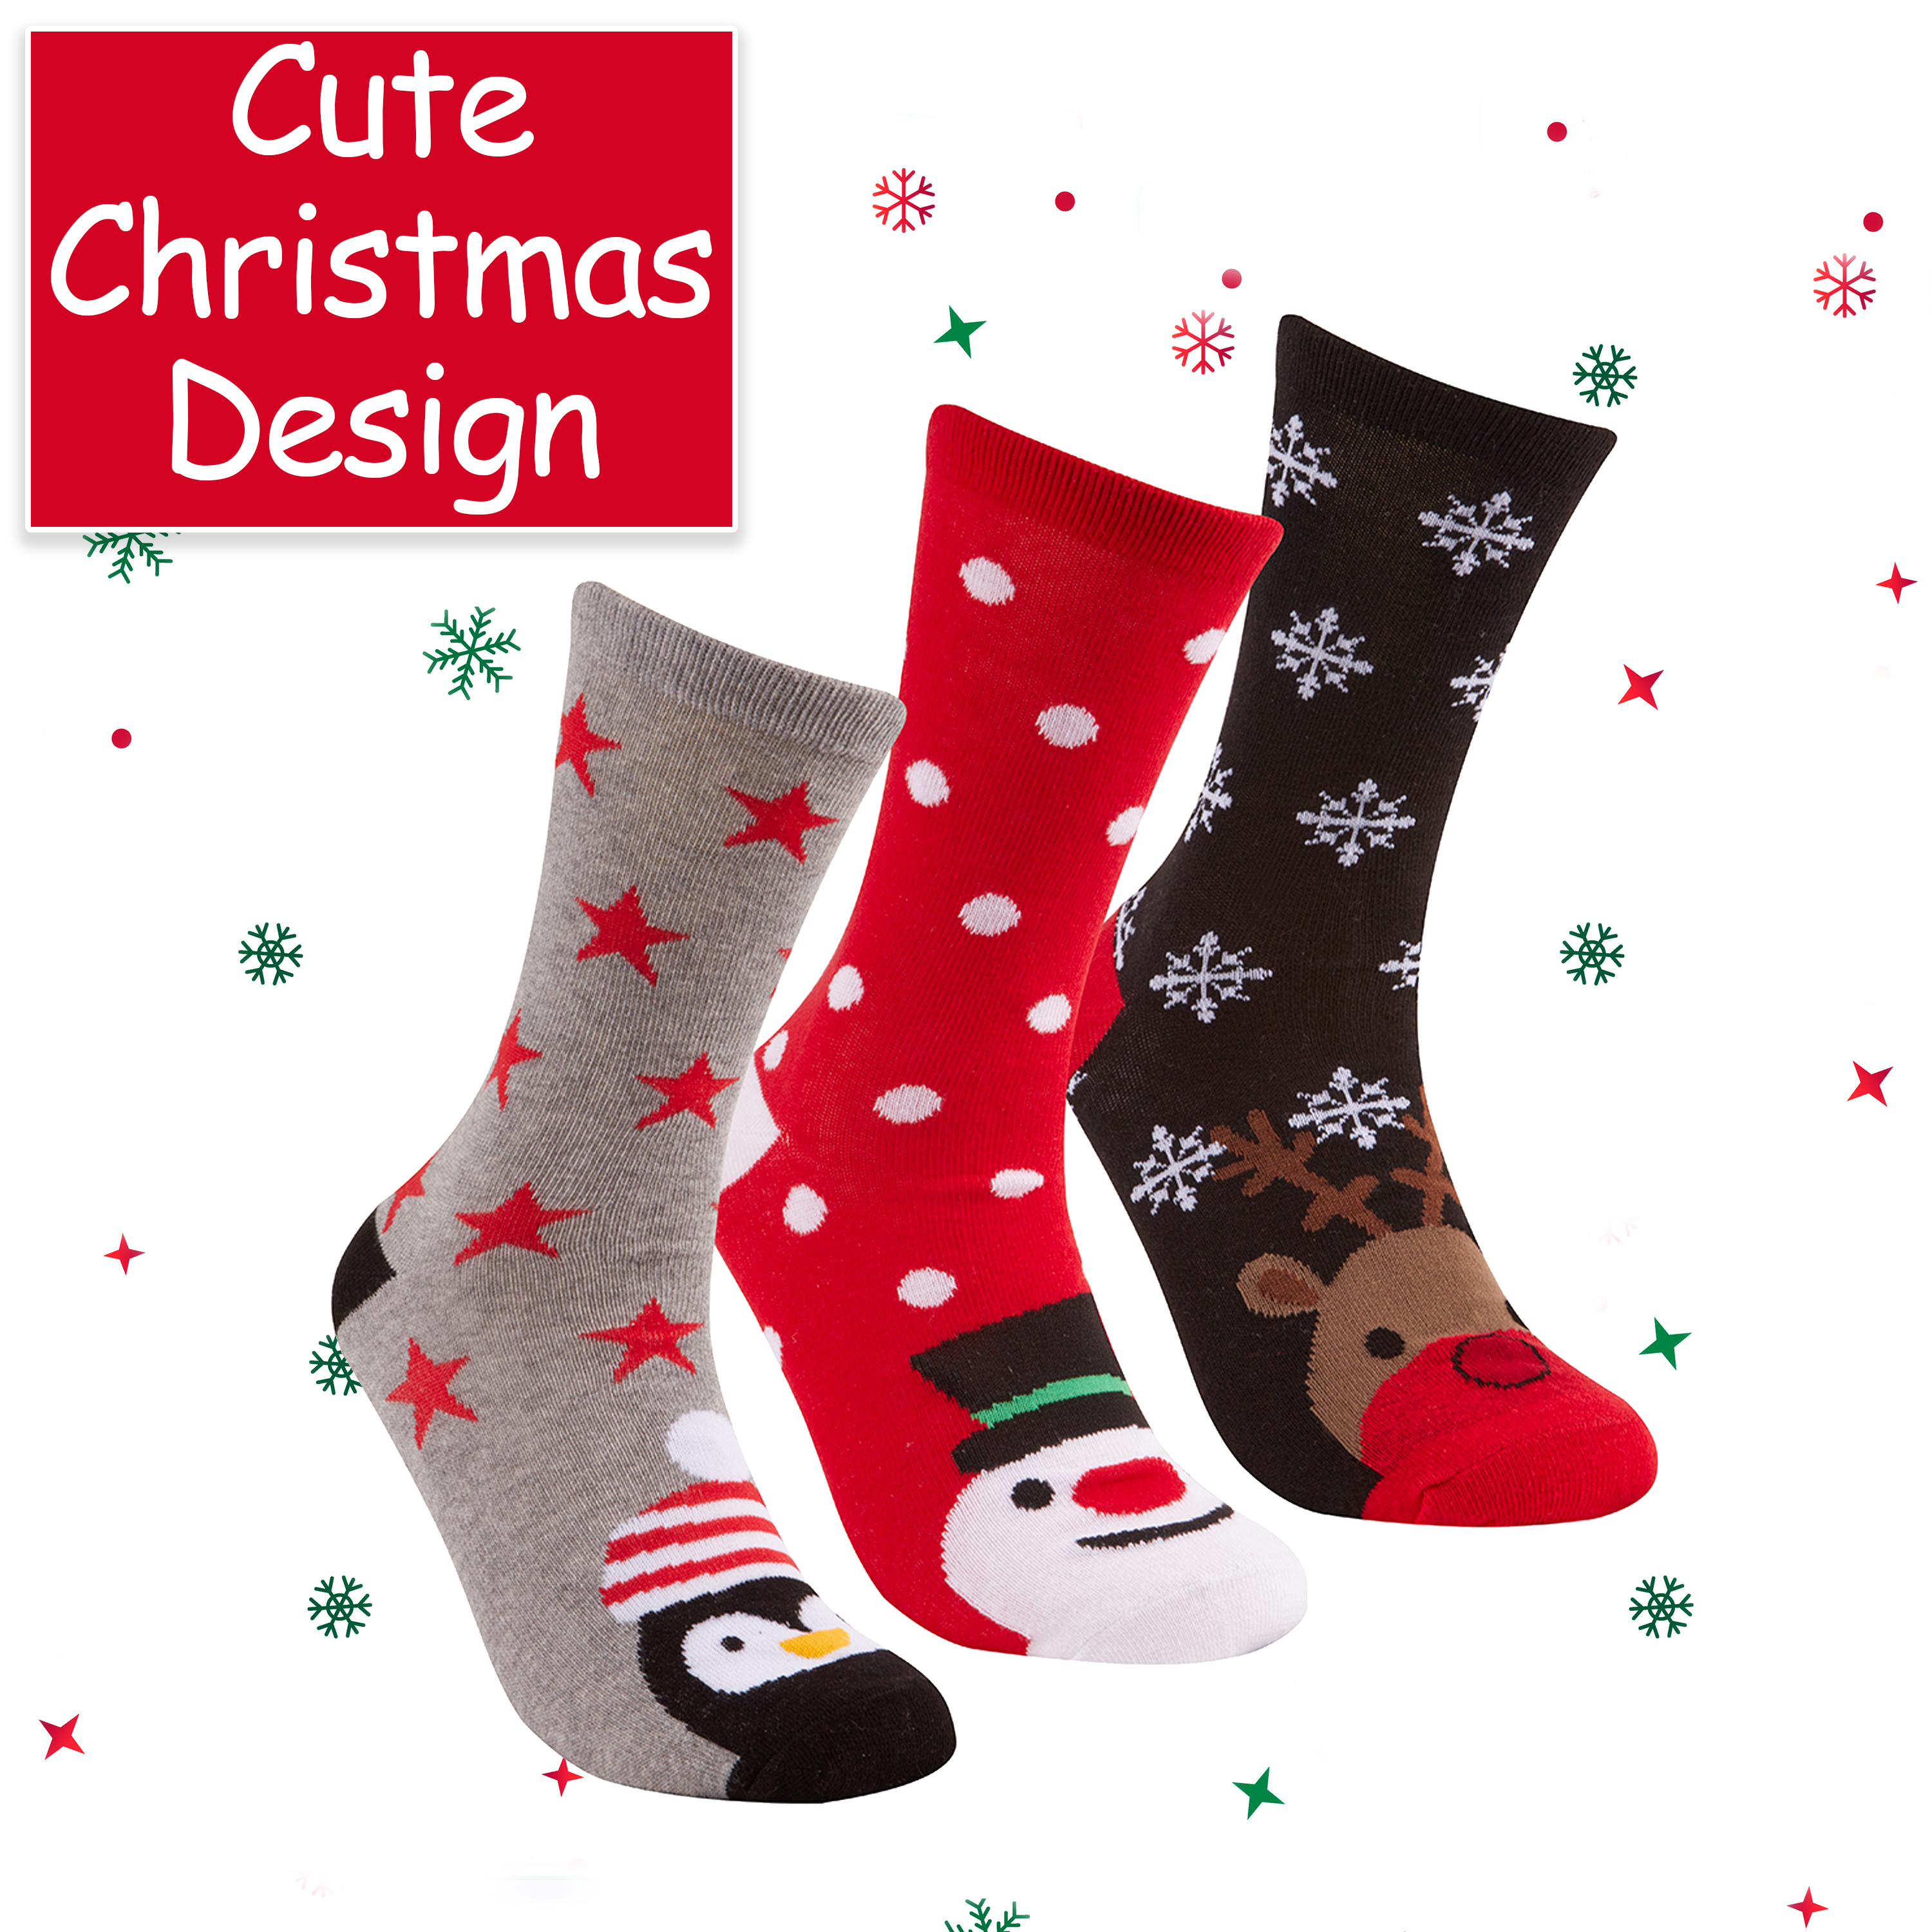 6 pair pack Size 4-7 ladies Festive Christmas Design Novelty Socks sock